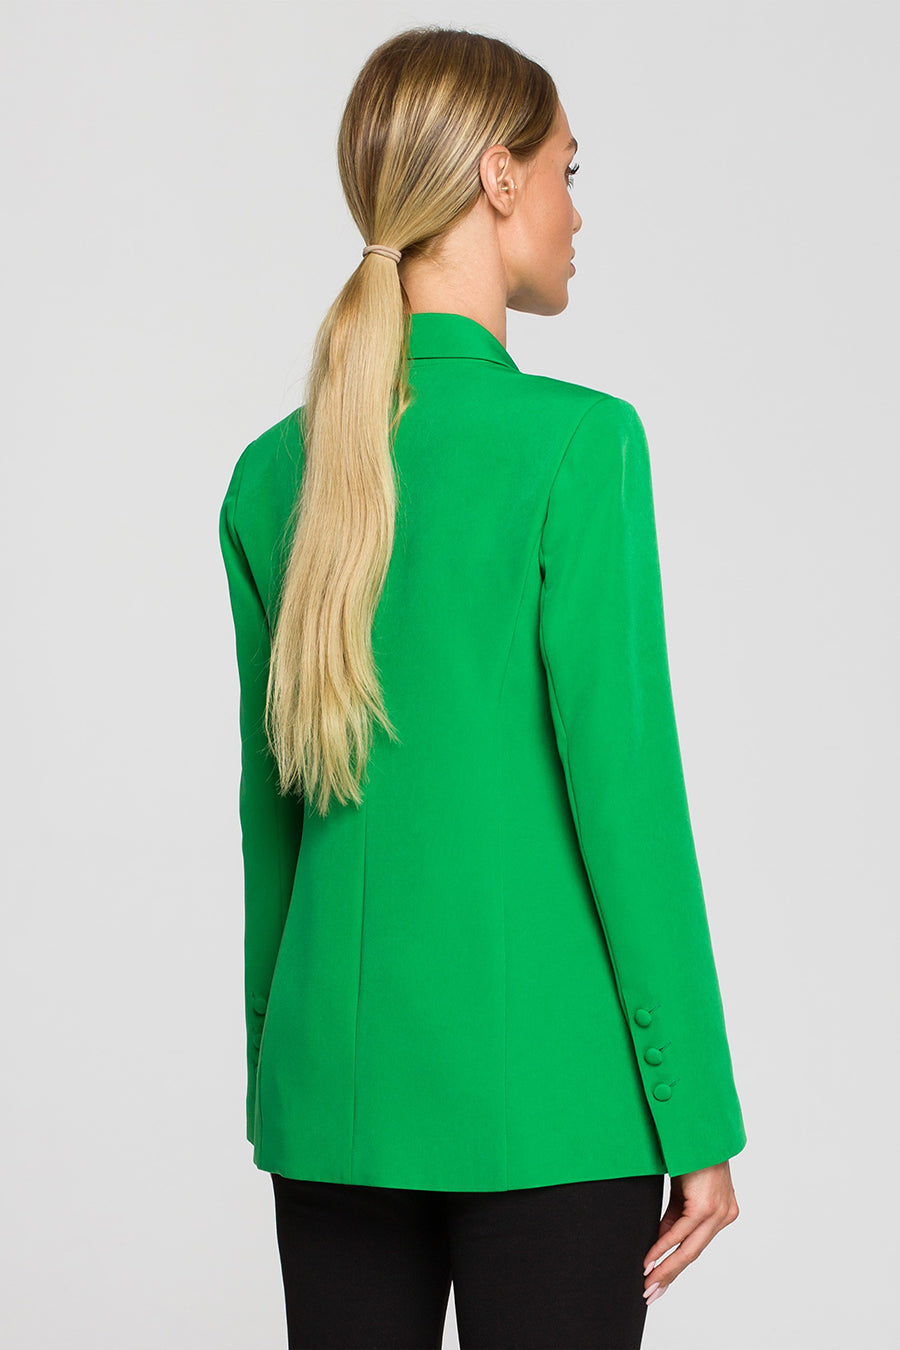 Γυναικείο σακάκι Kindra, Πράσινο 5